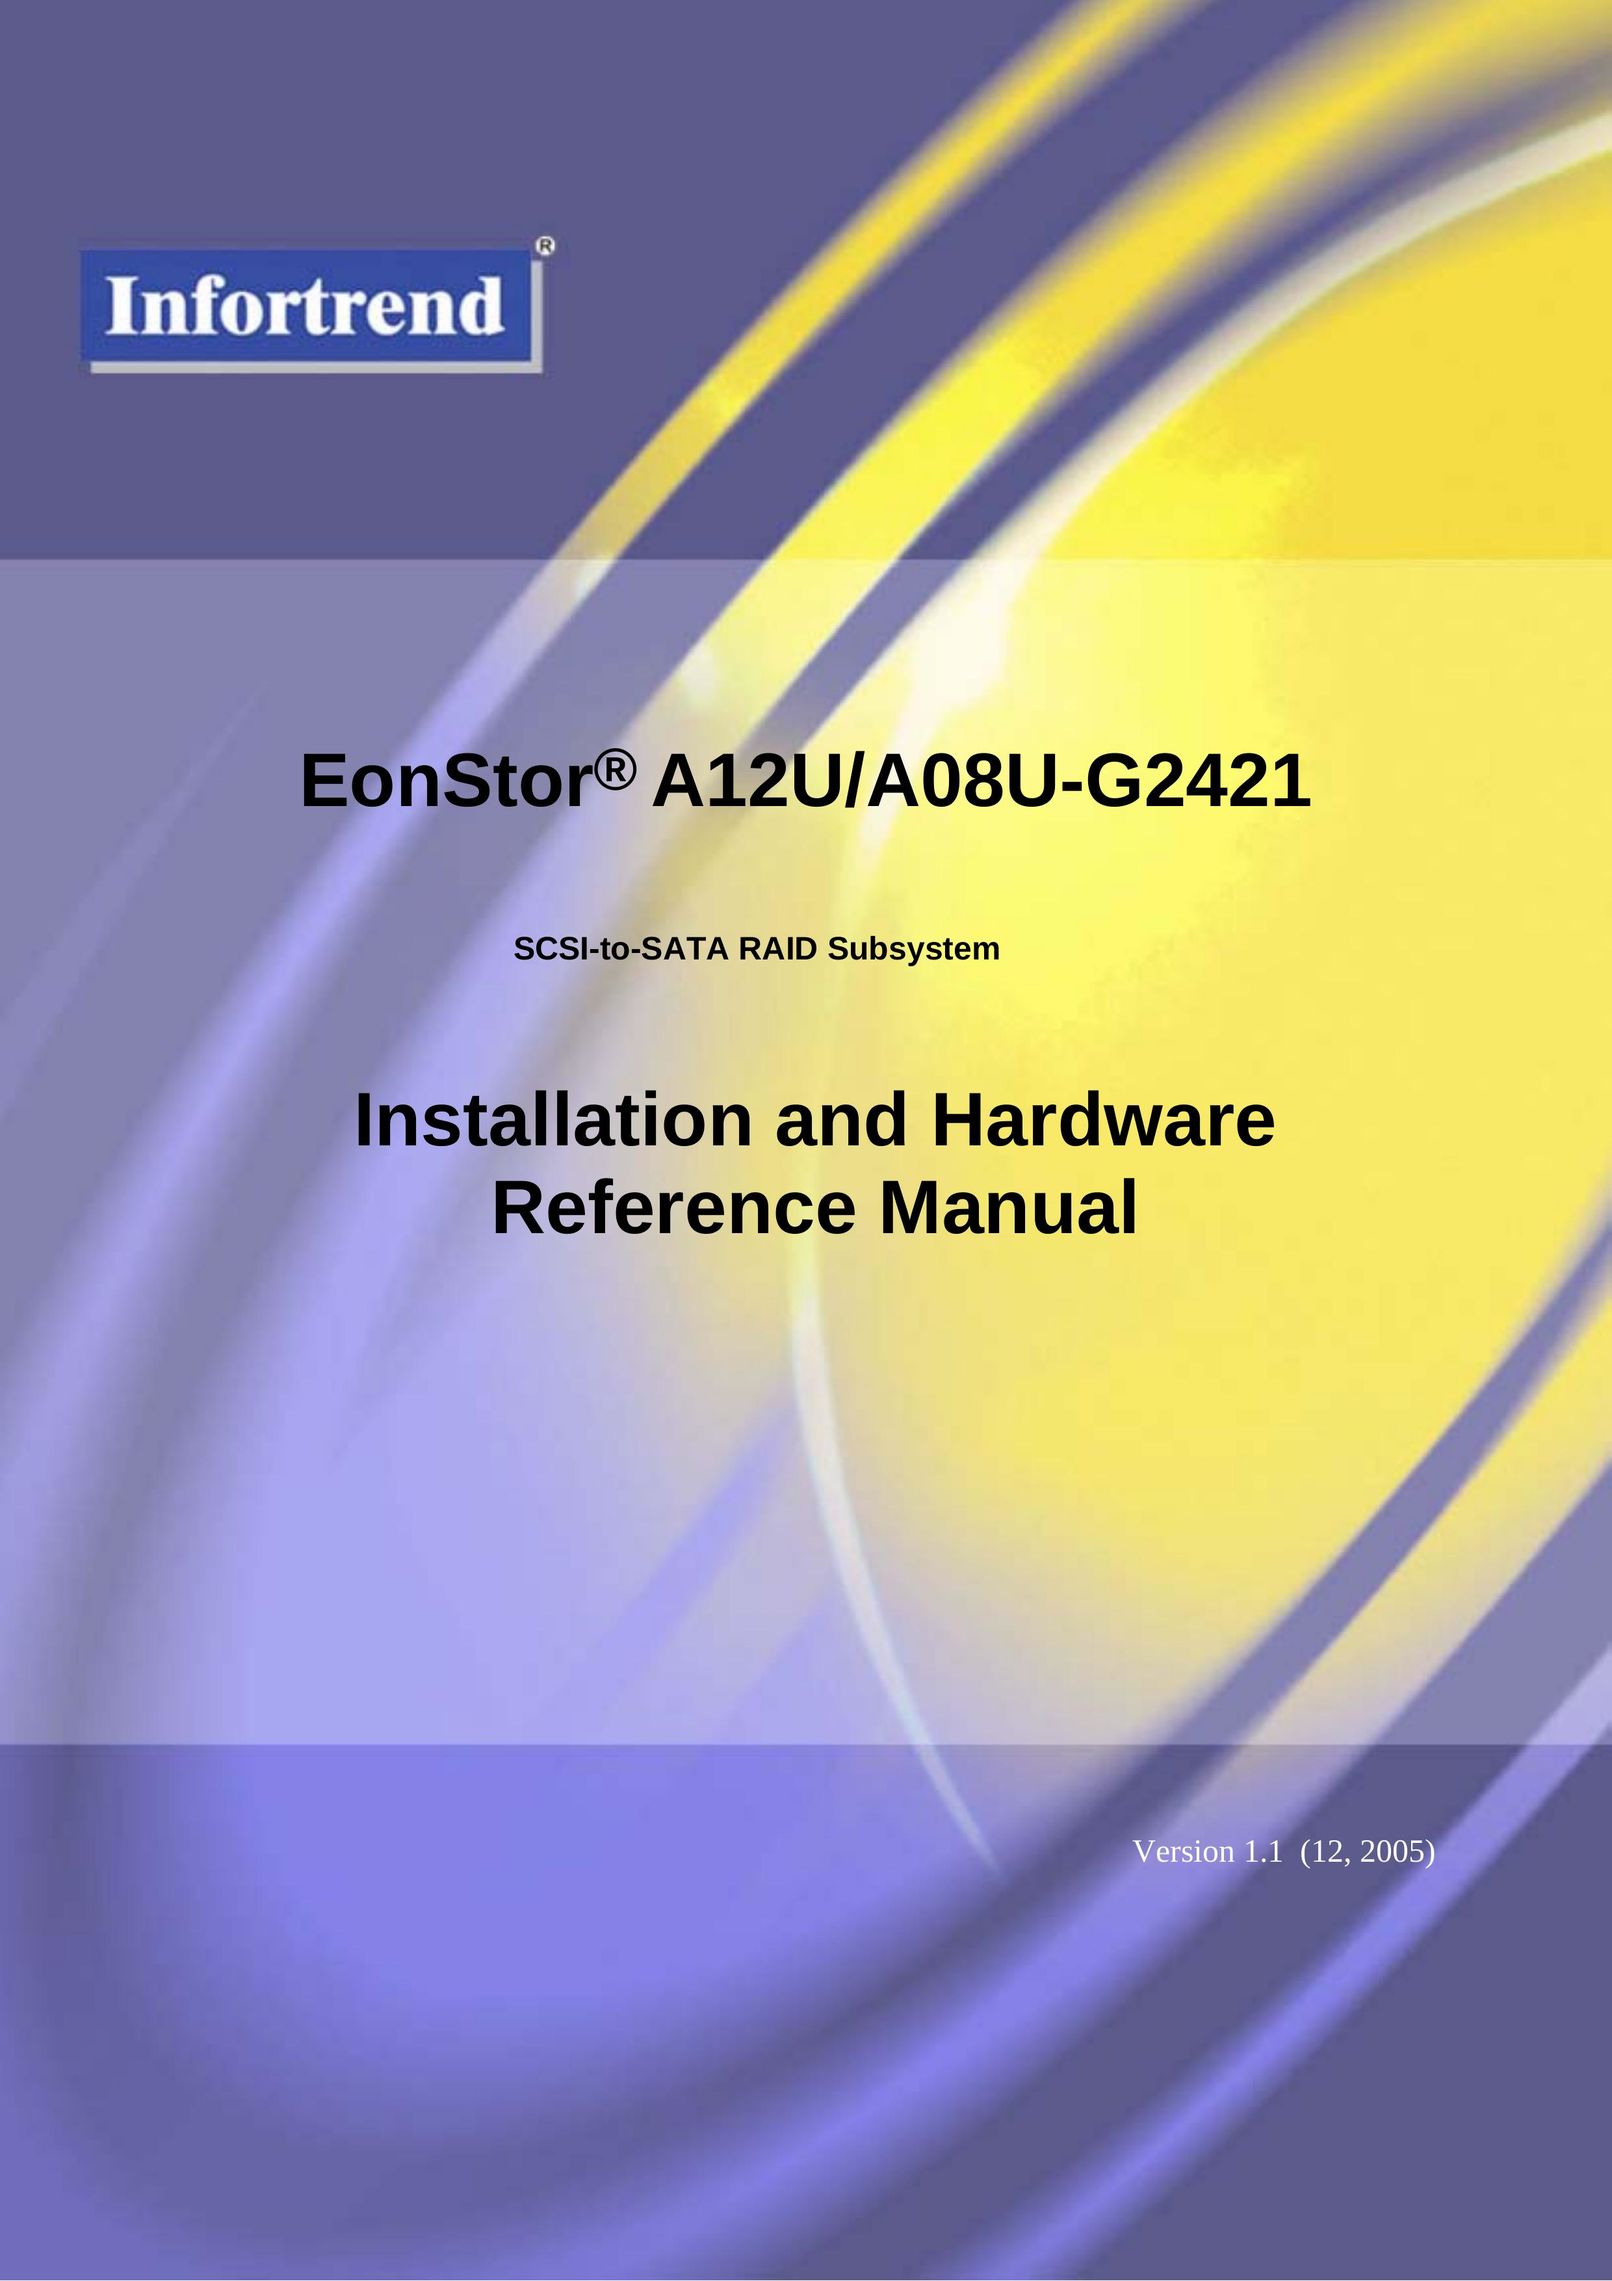 Infortrend A12U/A08U-G2421 Network Card User Manual